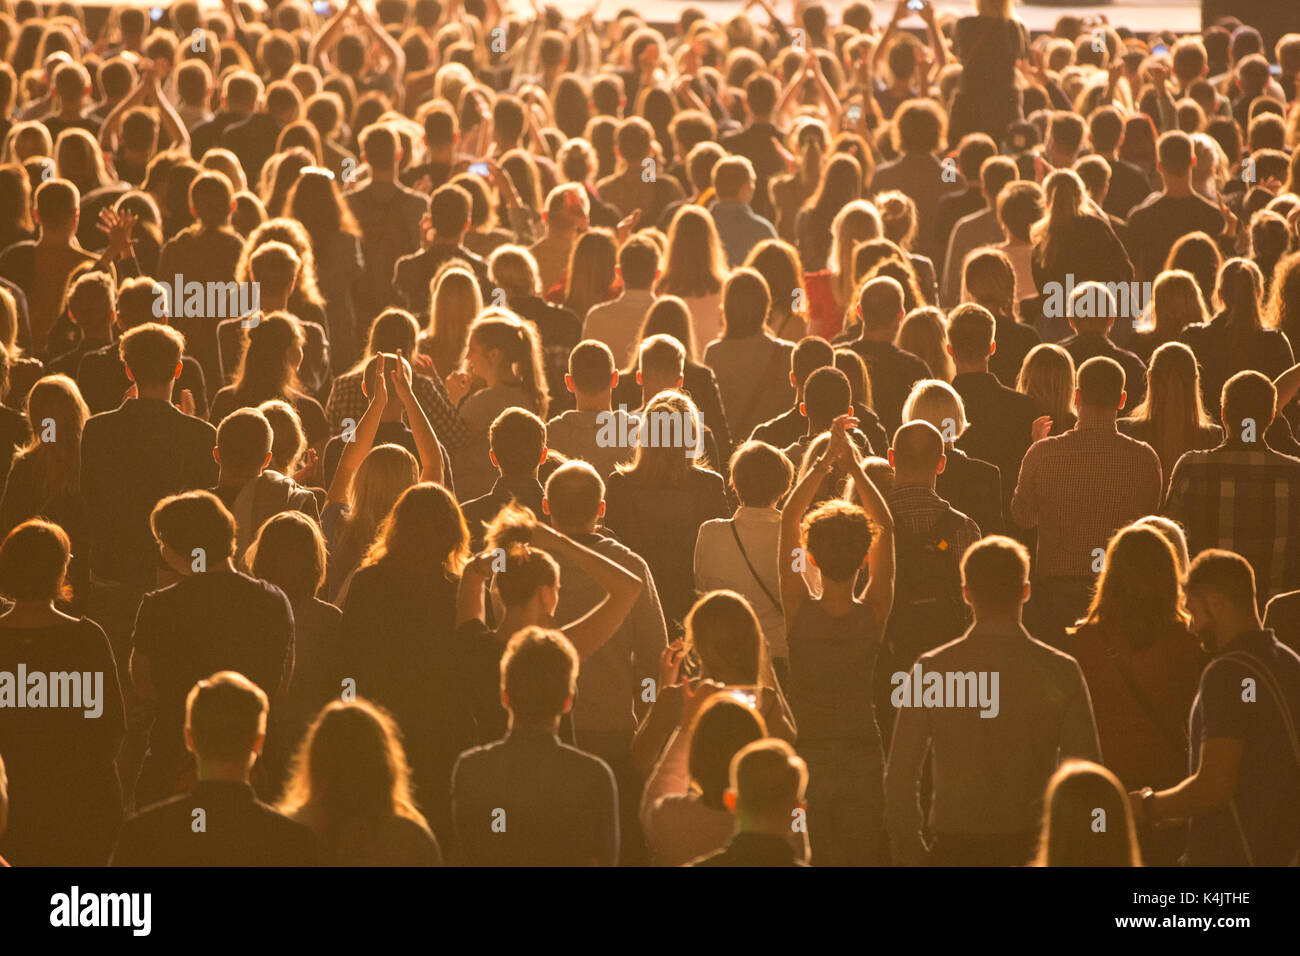 Anonyme Menge der Menschen während der Messe Veranstaltung stehend Stockfoto